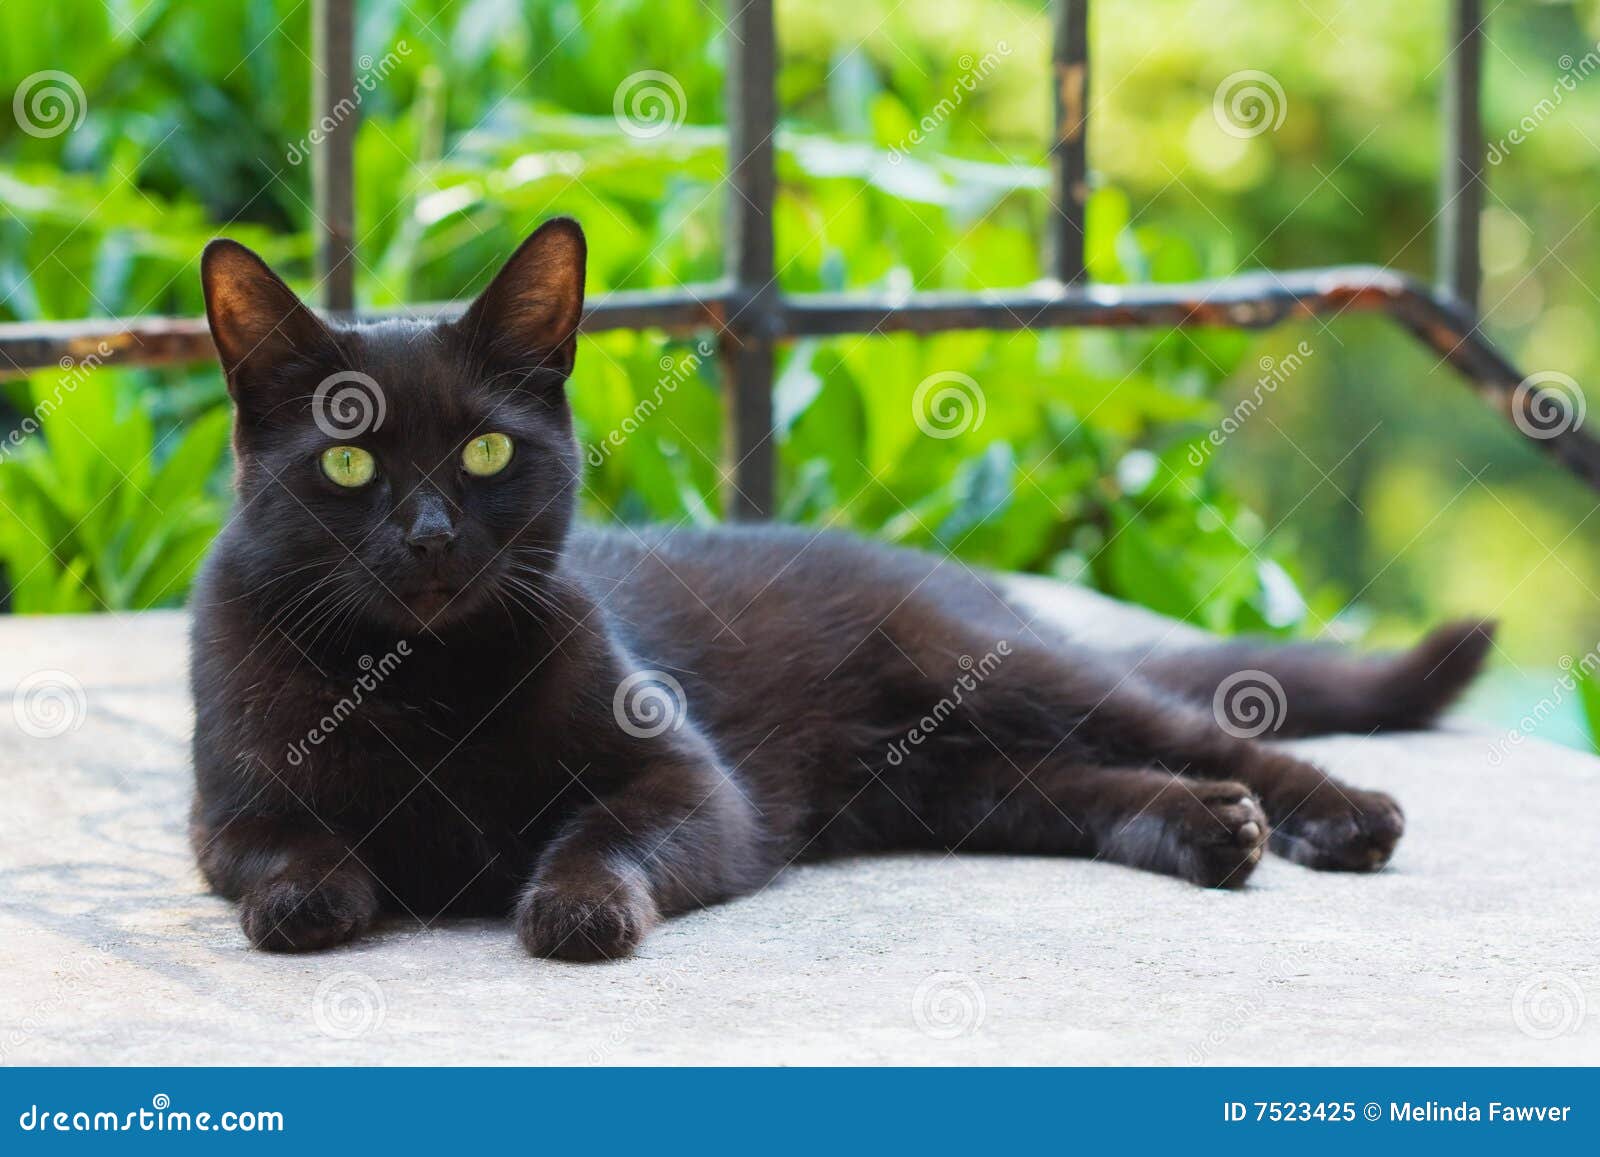 black cat resting